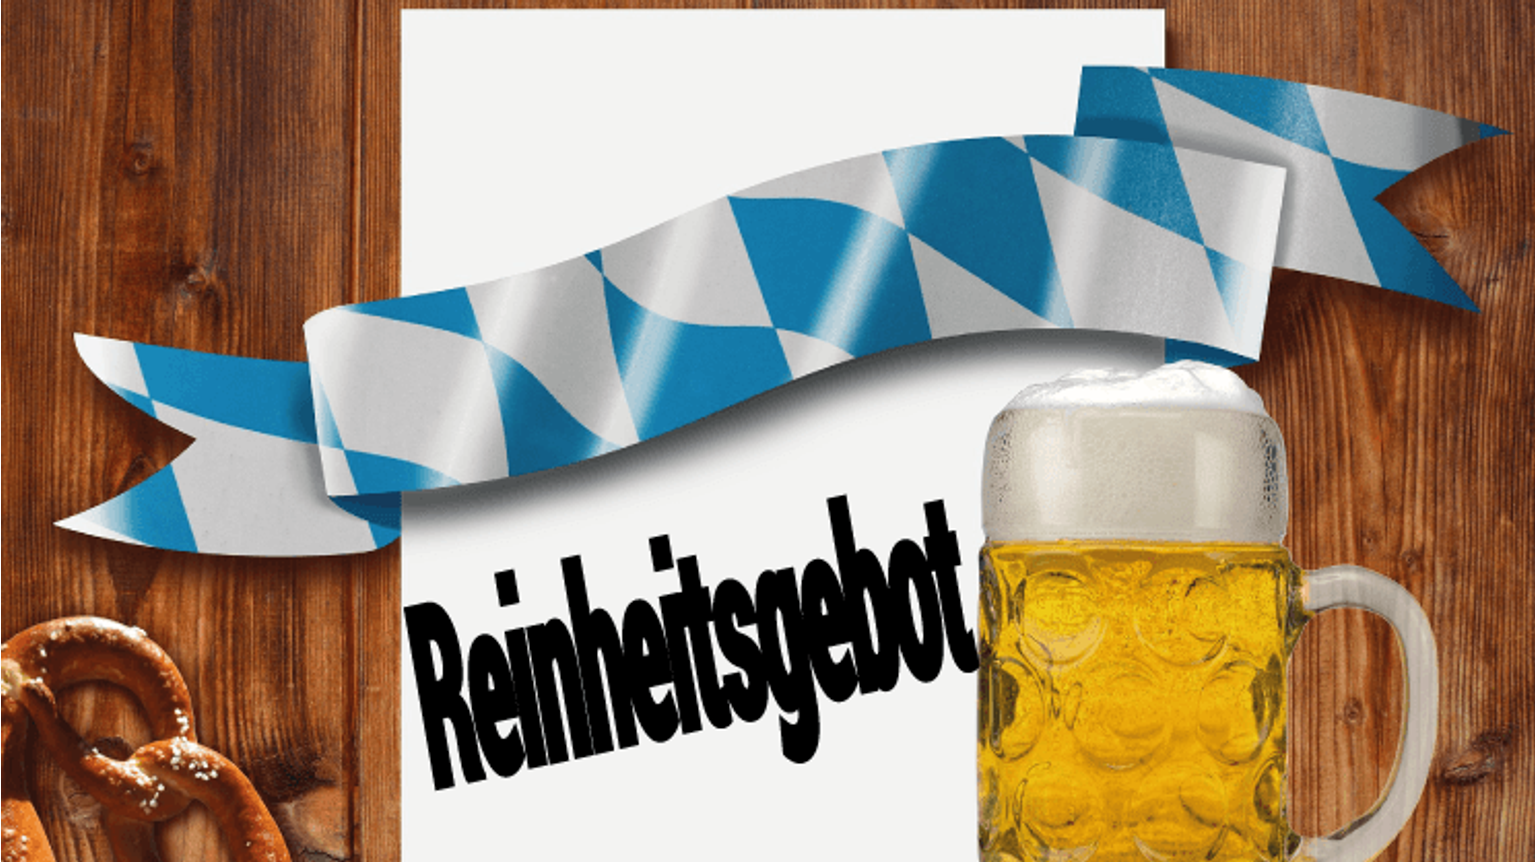 thumbnail for blog article named: Wat is het Duitse "Reinheitsgebot" voor bier?